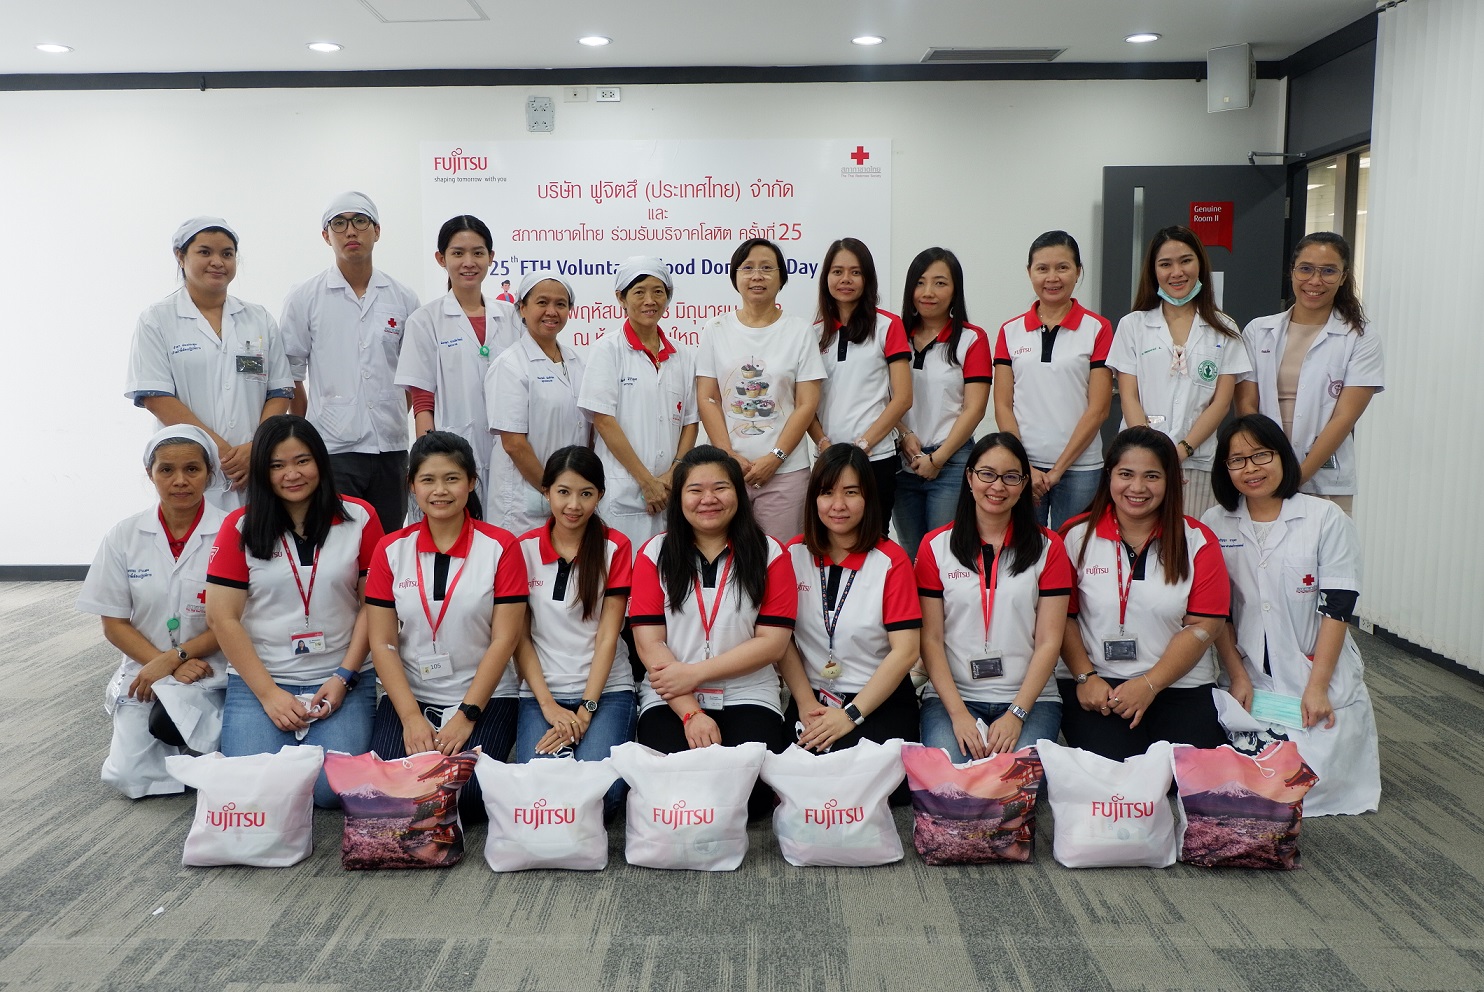 ฟูจิตสึรวมพลังจัดกิจกรรมเพื่อสังคม The 25th FTH Voluntary Blood Donation ร่วมบริจาคโลหิตให้กับสภากาชาดไทย ครั้งที่ 25